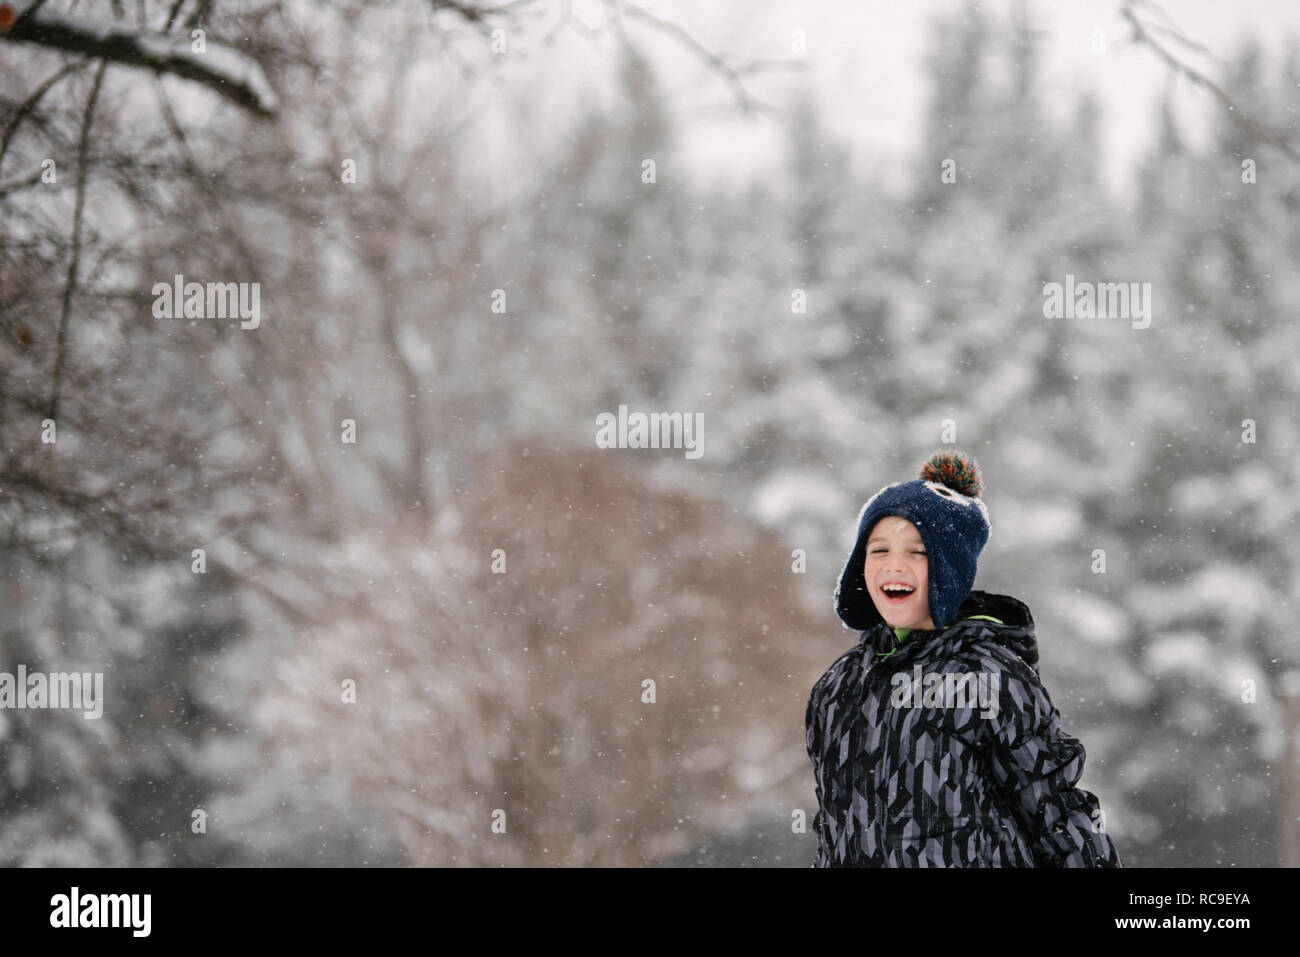 Boy in winter landscape Stock Photo